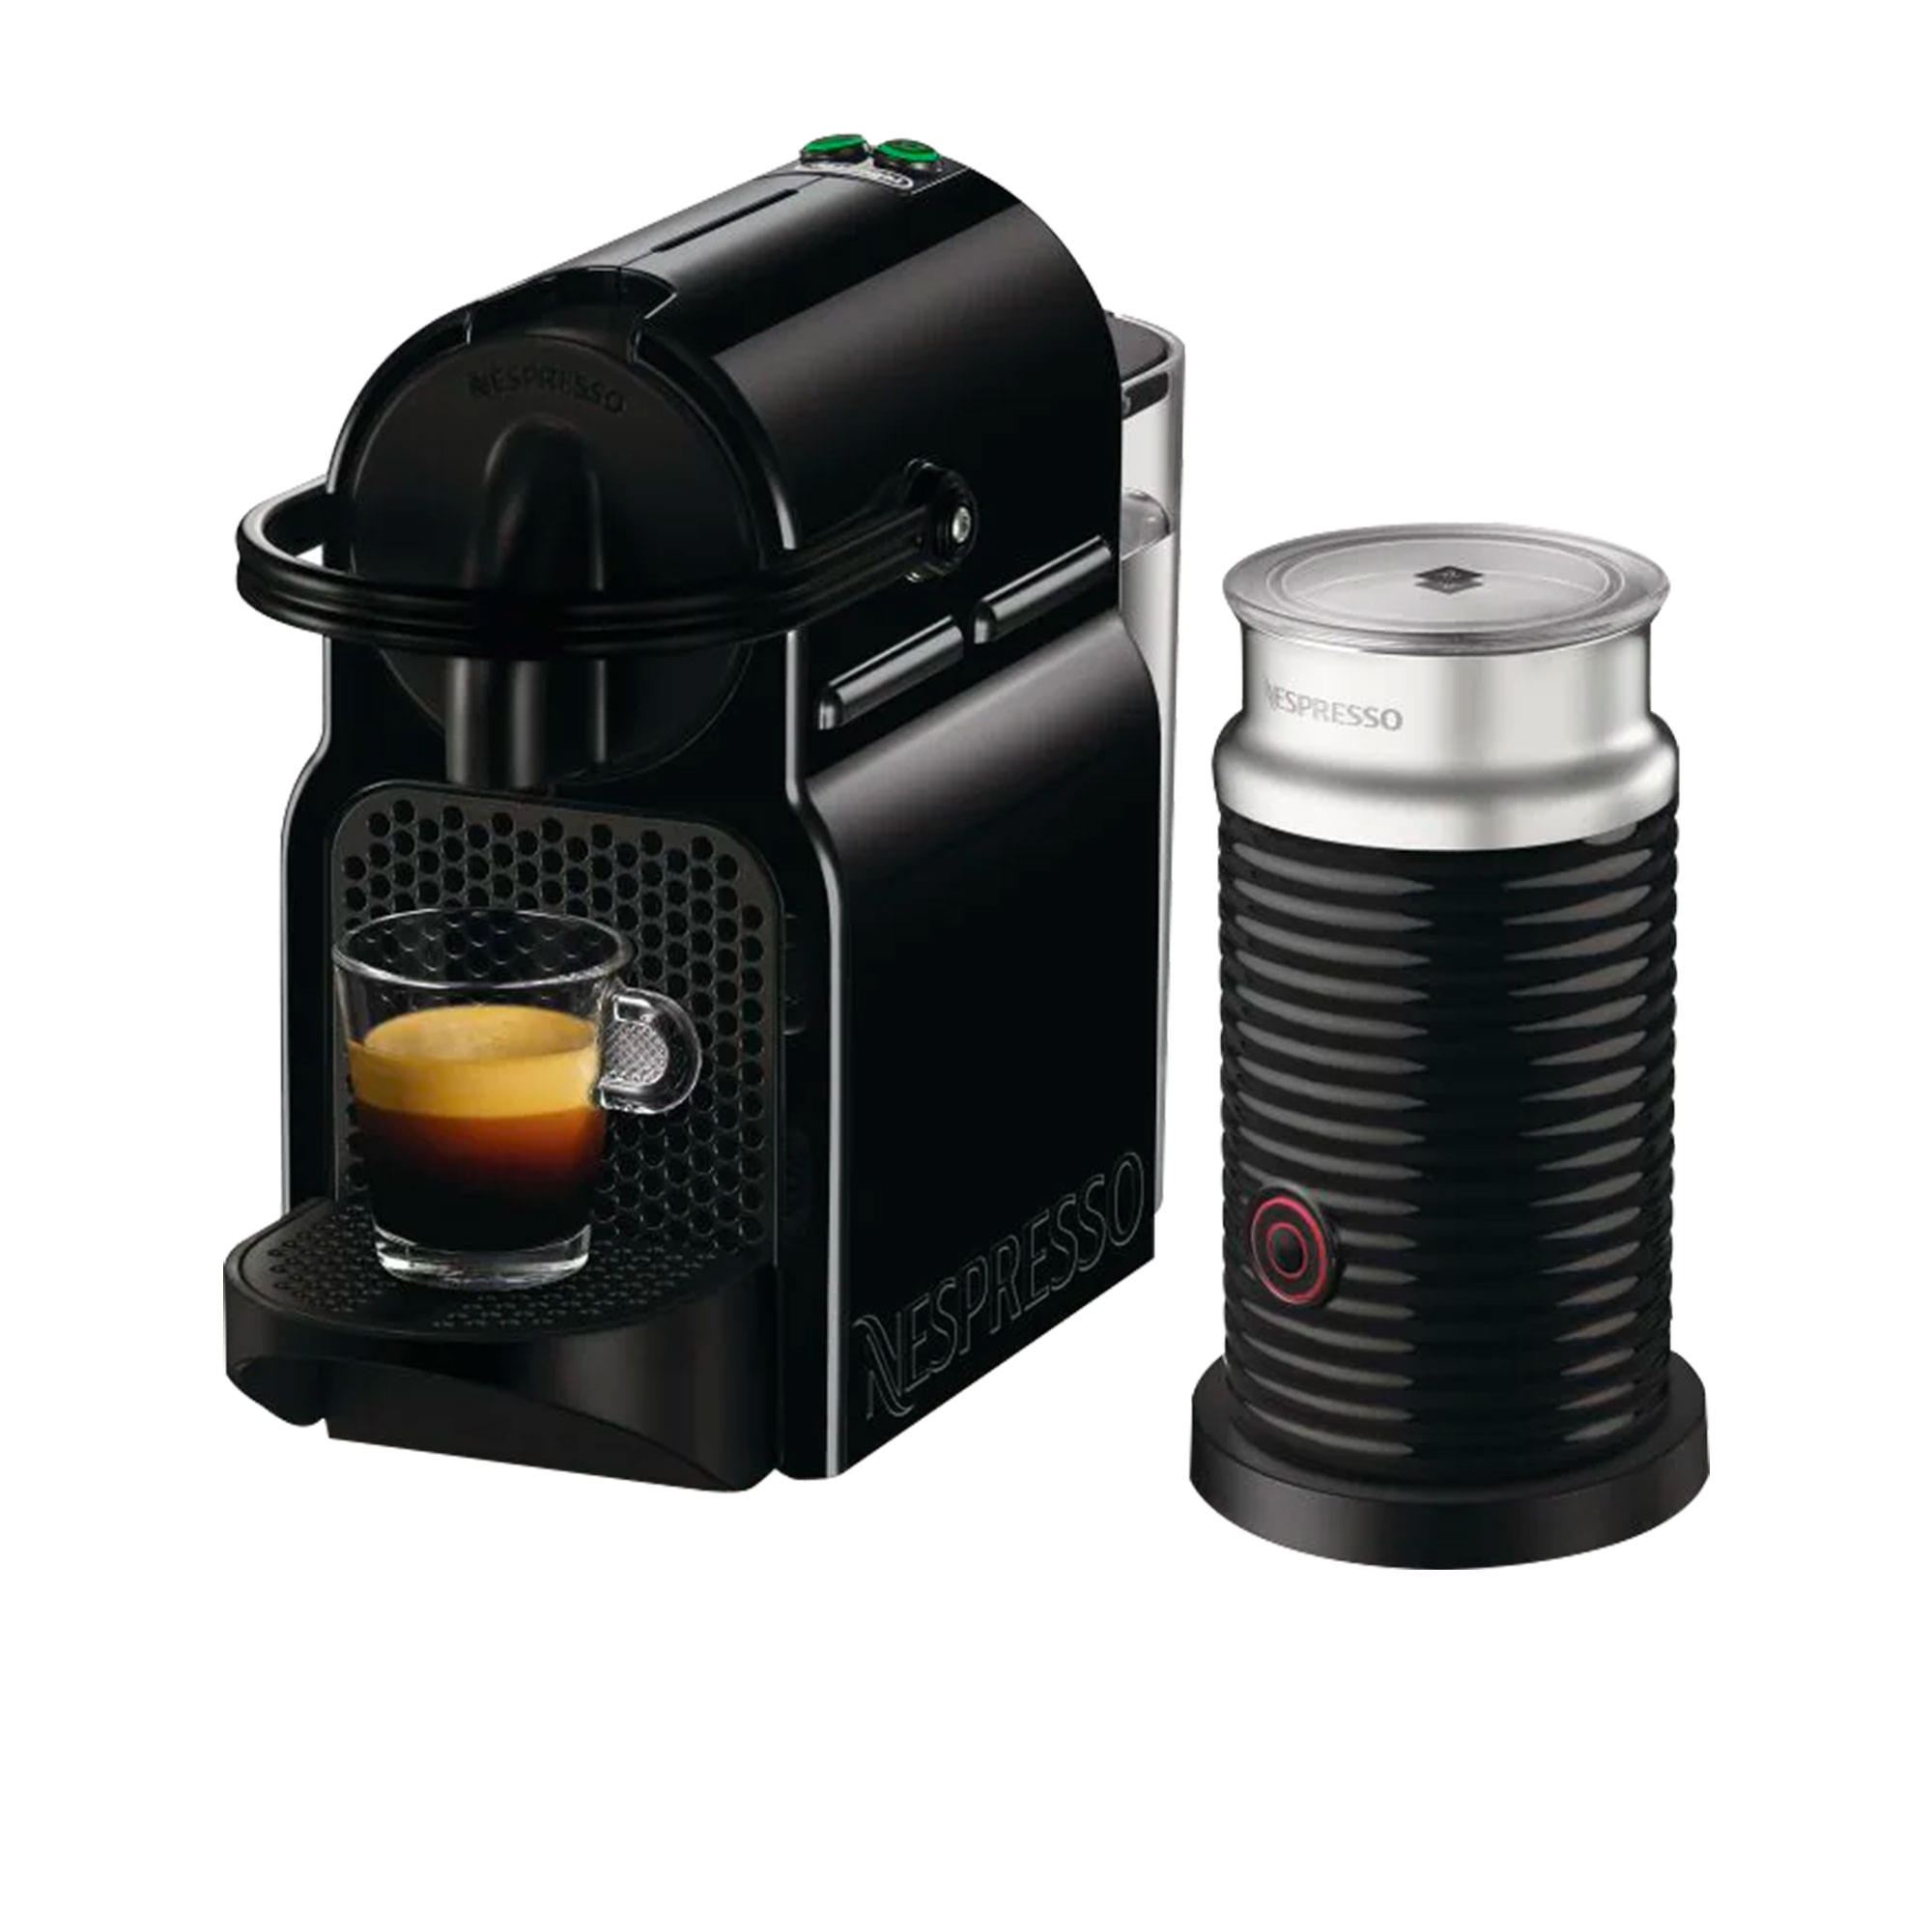 DeLonghi Nespresso Inissia EN80BAE Coffee Machine Black Image 2